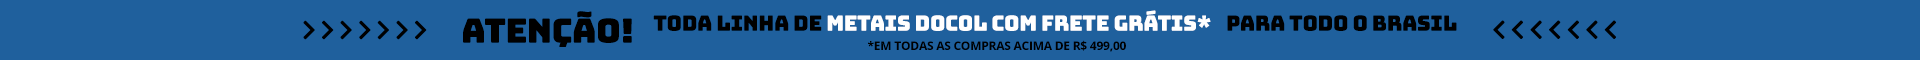 Banner de promoção de frete grátis em compras acima de 499 reais para  alinha de metais da marca Docol